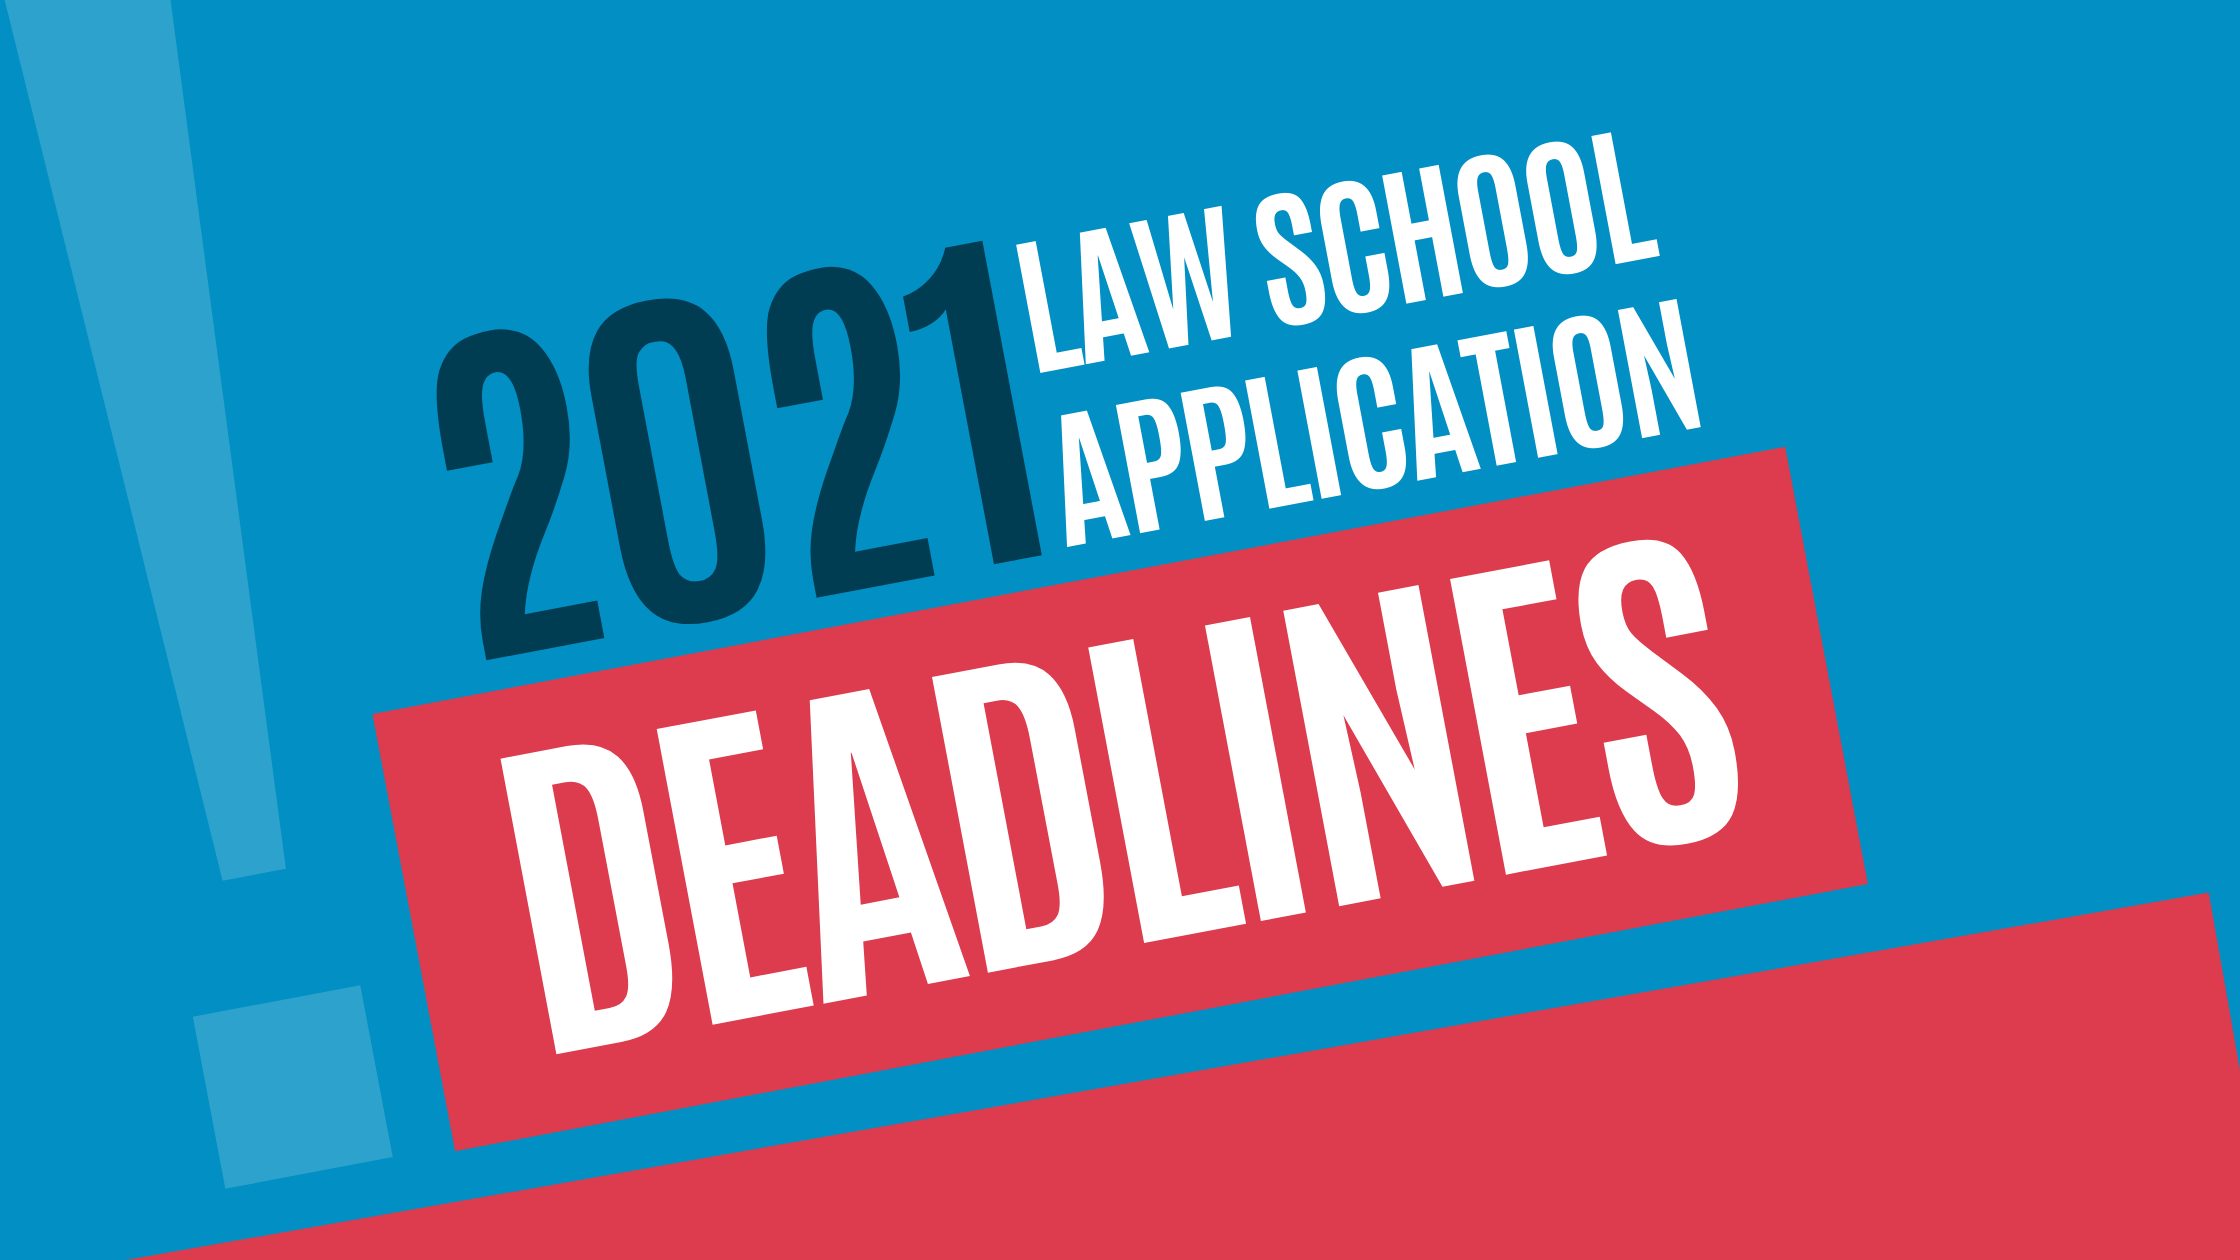 Law School Application Deadlines (2021-2022) - LawSchooli